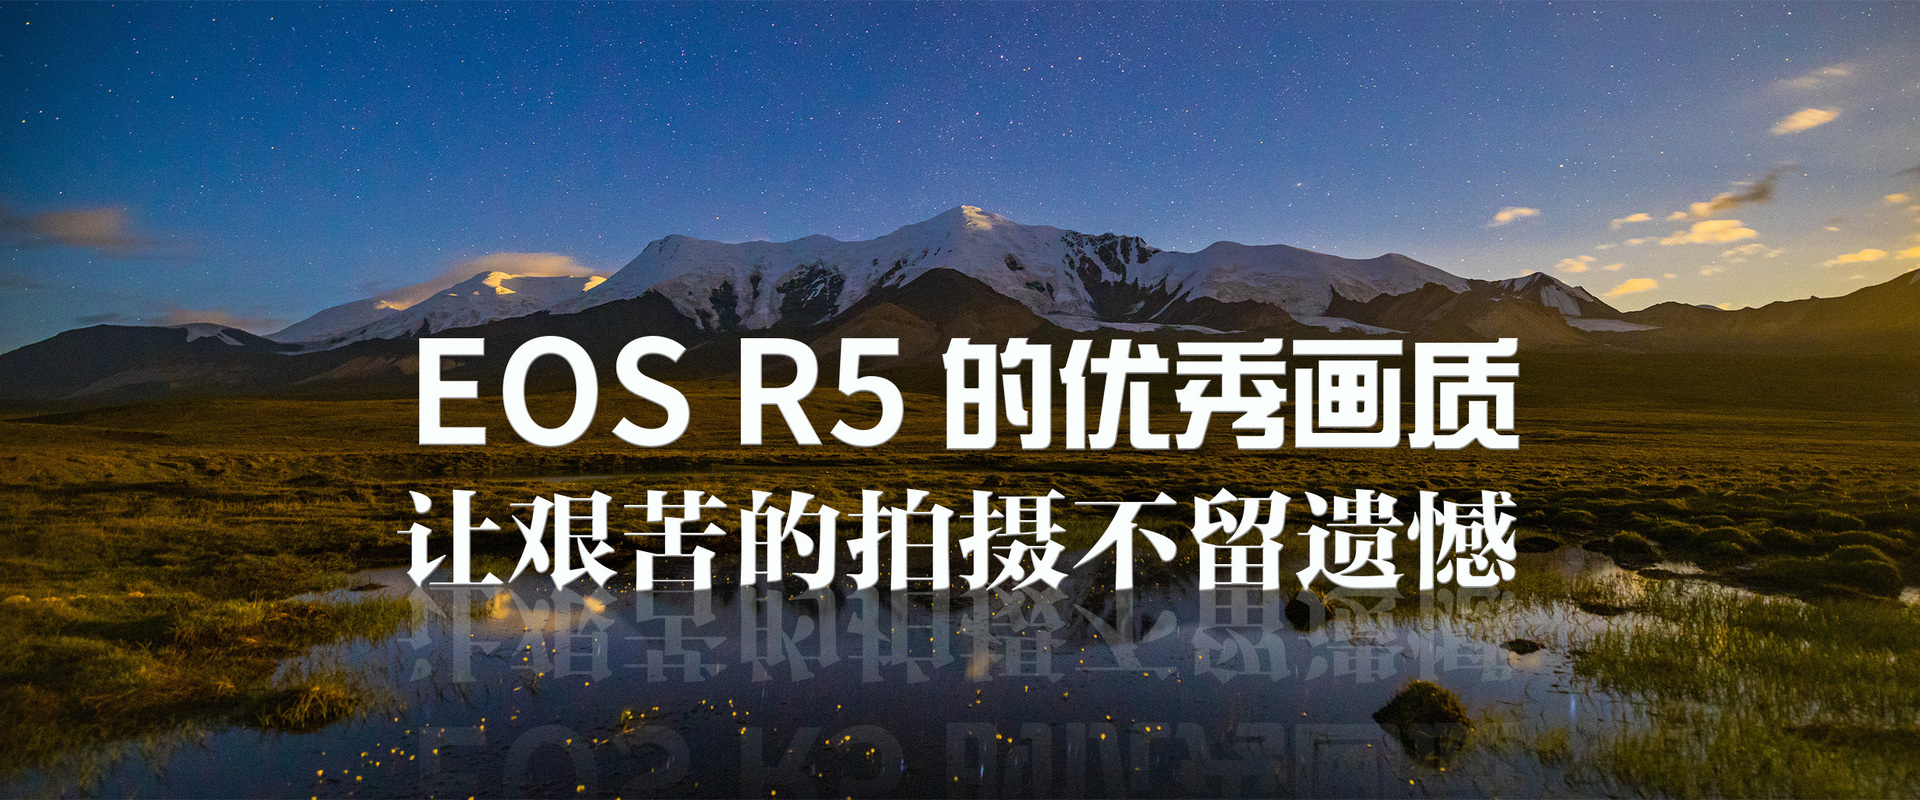 EOS R5的优秀画质 让艰苦的拍摄不留遗憾